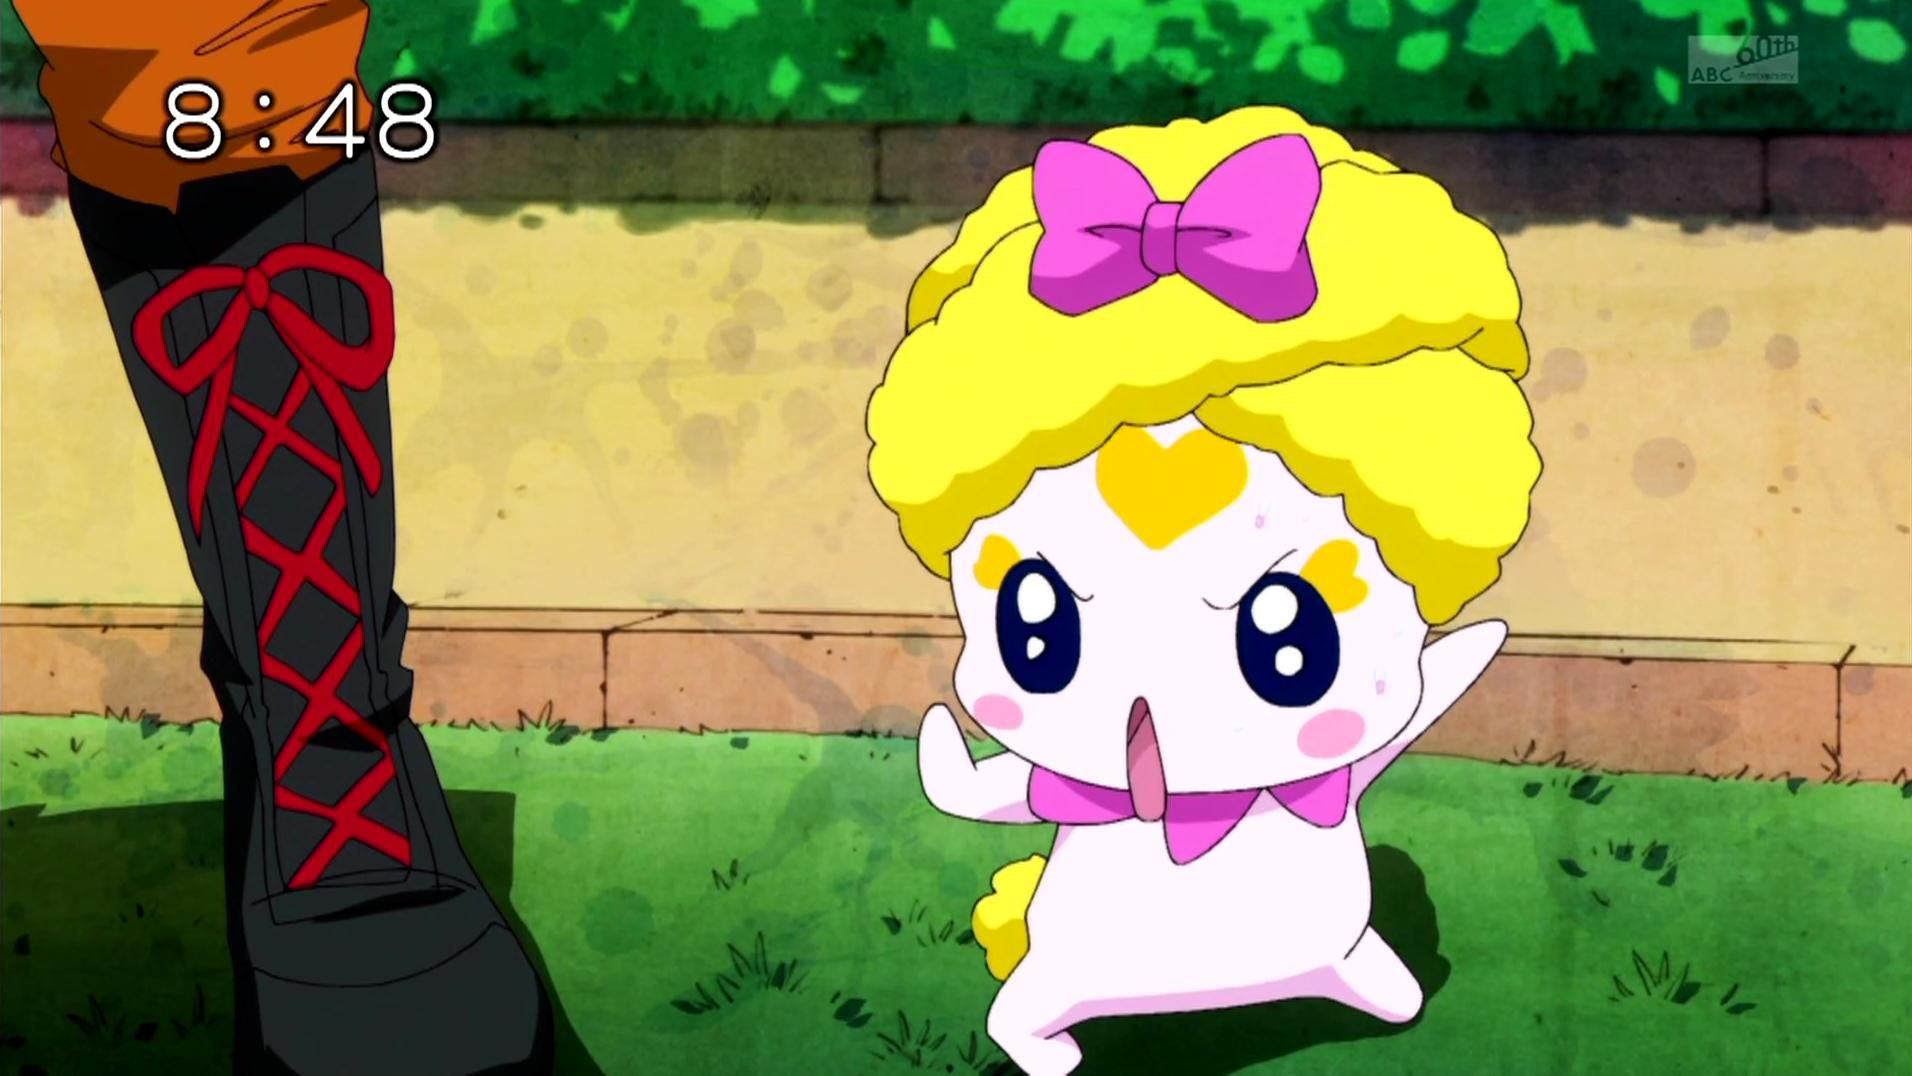 Smile Pretty Cure!/Glitter Force SDC: Episode 1